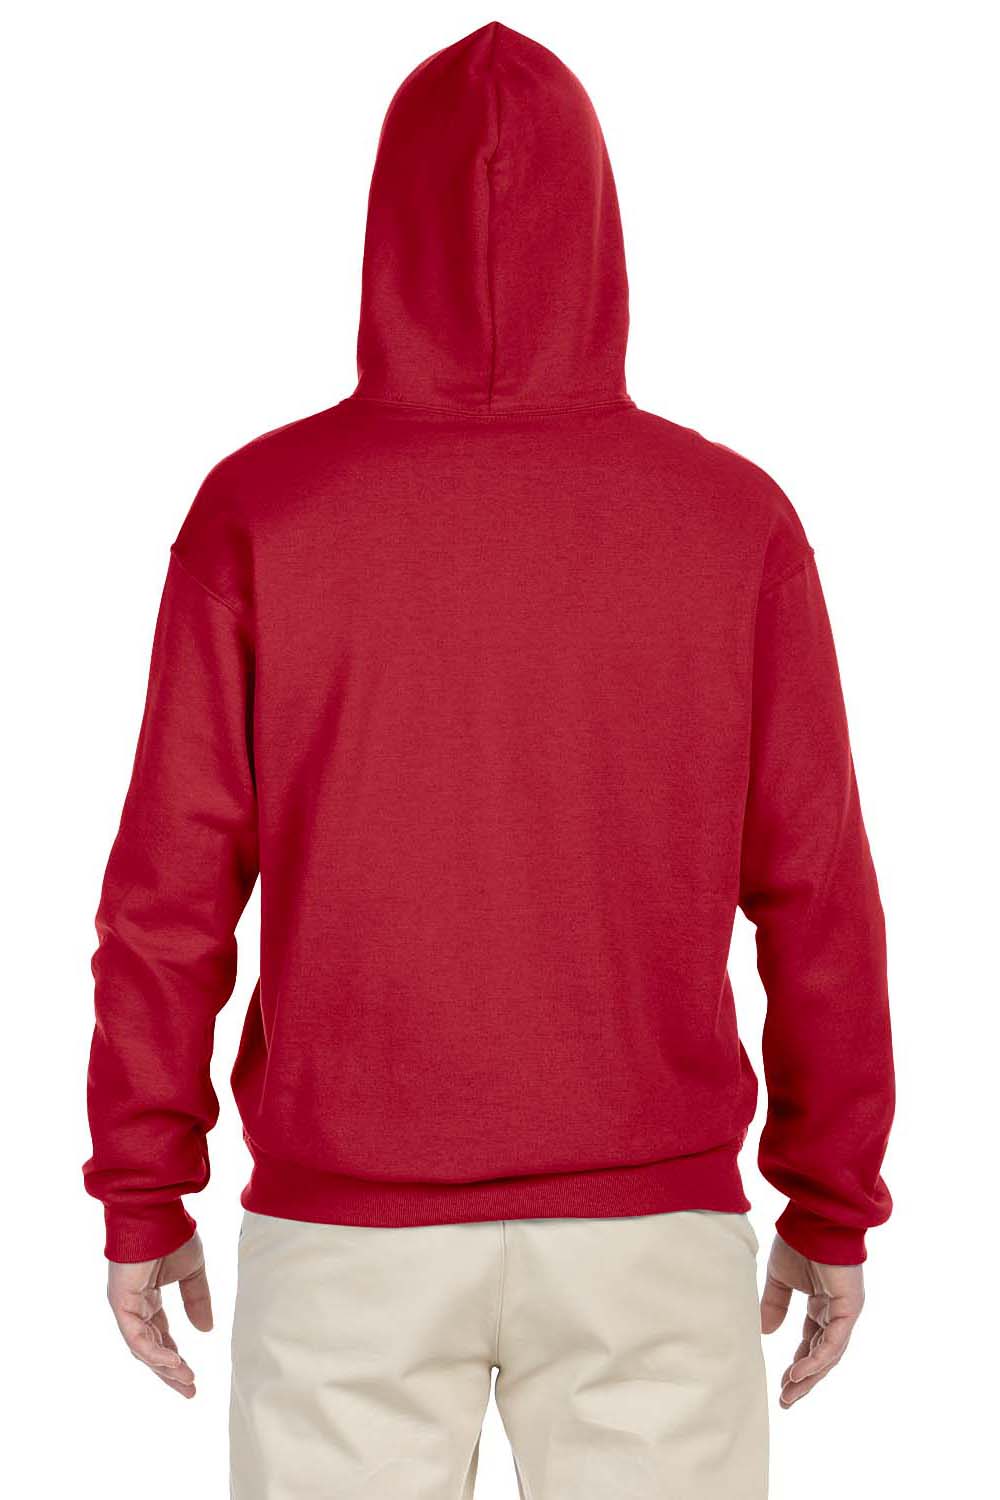 Jerzees 996 Mens NuBlend Fleece Hooded Sweatshirt Hoodie Red Back